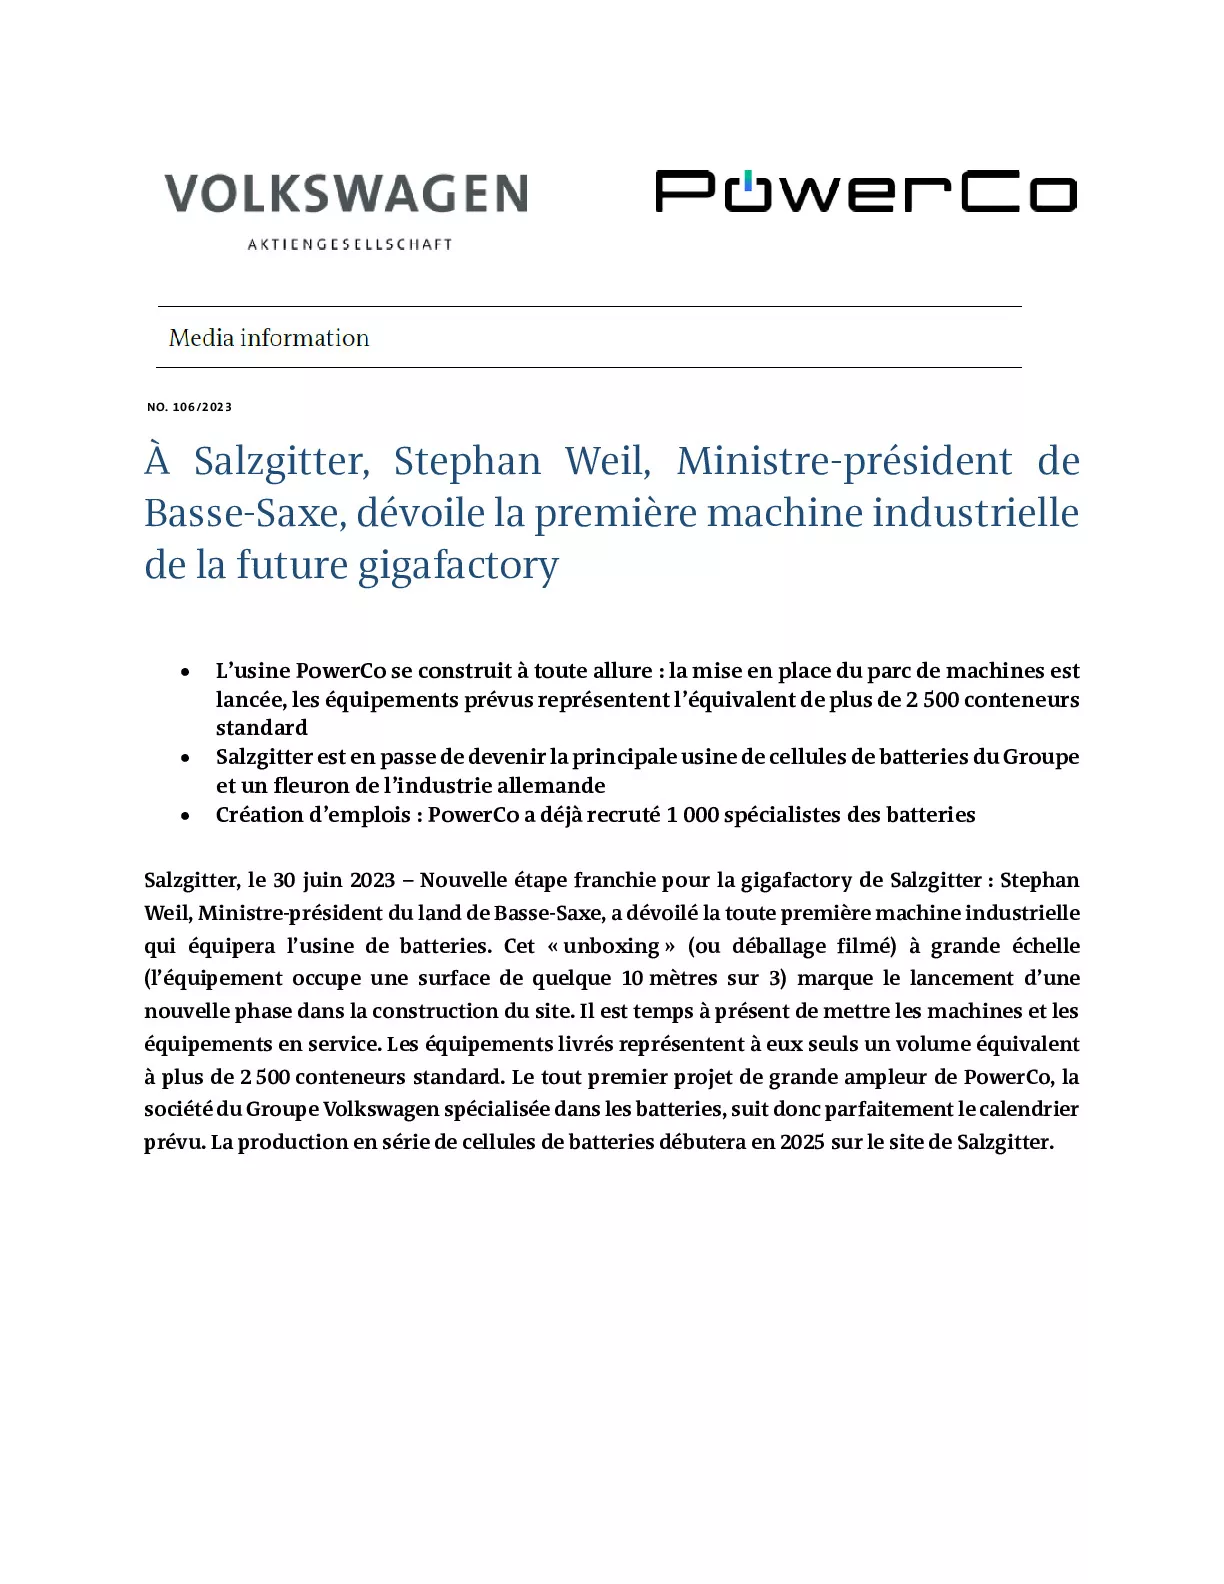 Salzgitter, Stephan Weil, Ministre-président de Basse-Saxe, dévoile la première machine industrielle de la future gigafactory-pdf